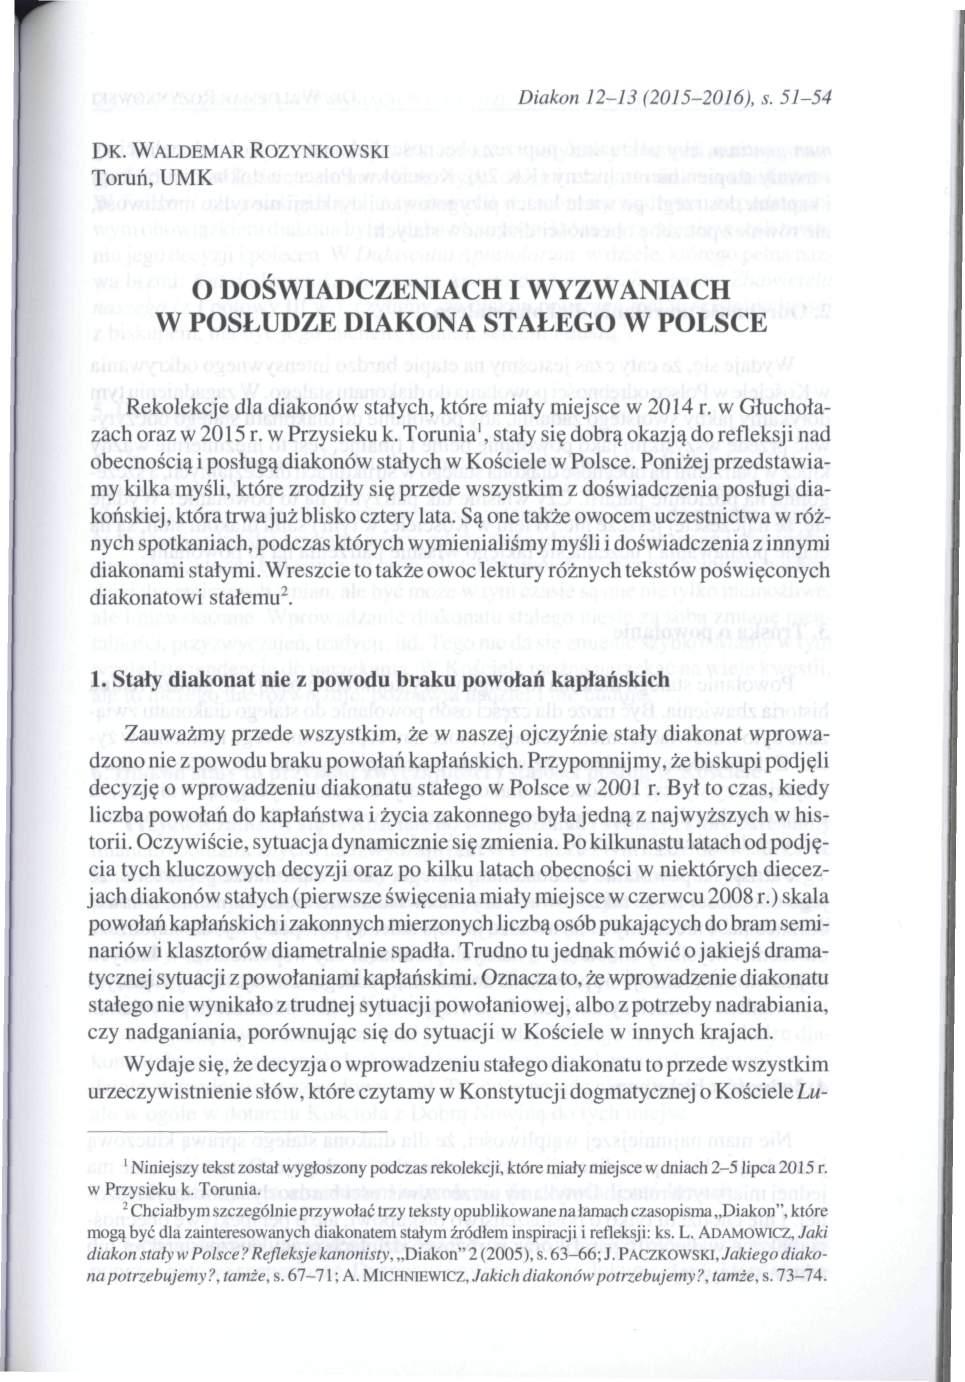 Diakon 12-13 (2015-2016), s. 51-54 DK. WALDEMAR ROZYNKOWSKI Toruń, UMK O DOŚWIADCZENIACH I WYZWANIACH W POSŁUDZE DIAKONA STAŁEGO W POLSCE Rekolekcje dla diakonów stałych, które miały miejsce w 2014 r.